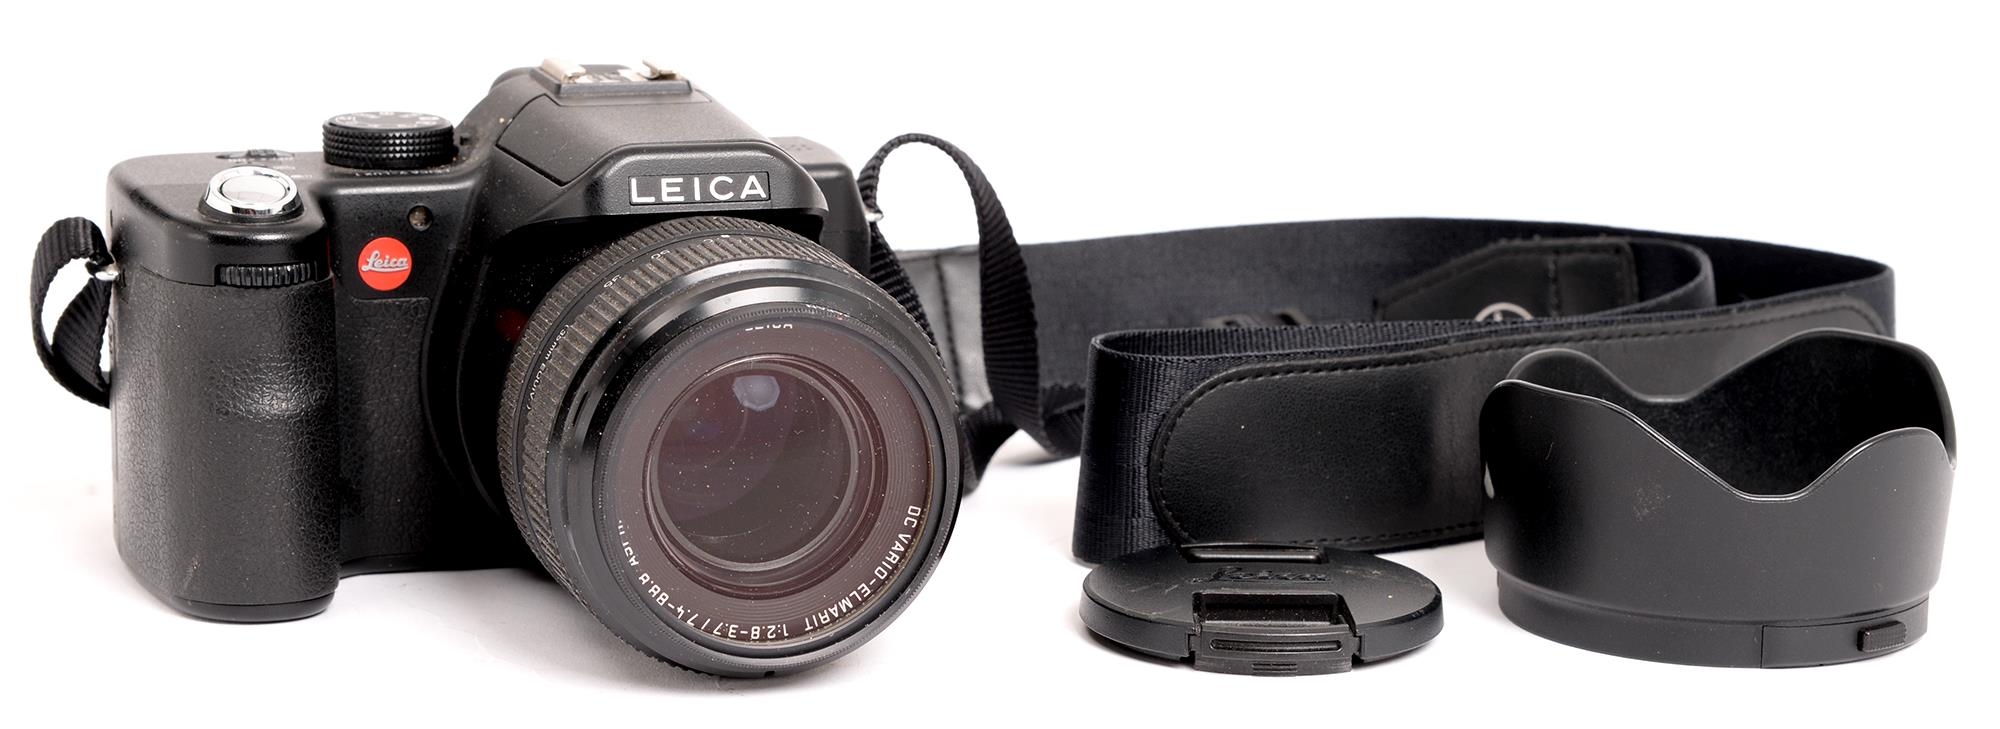 A Leica V-LUX1 digital camera, serial No 3138098, maker's DC Vario-Elmarit F2.8-3.7/7.4-88.8mm lens